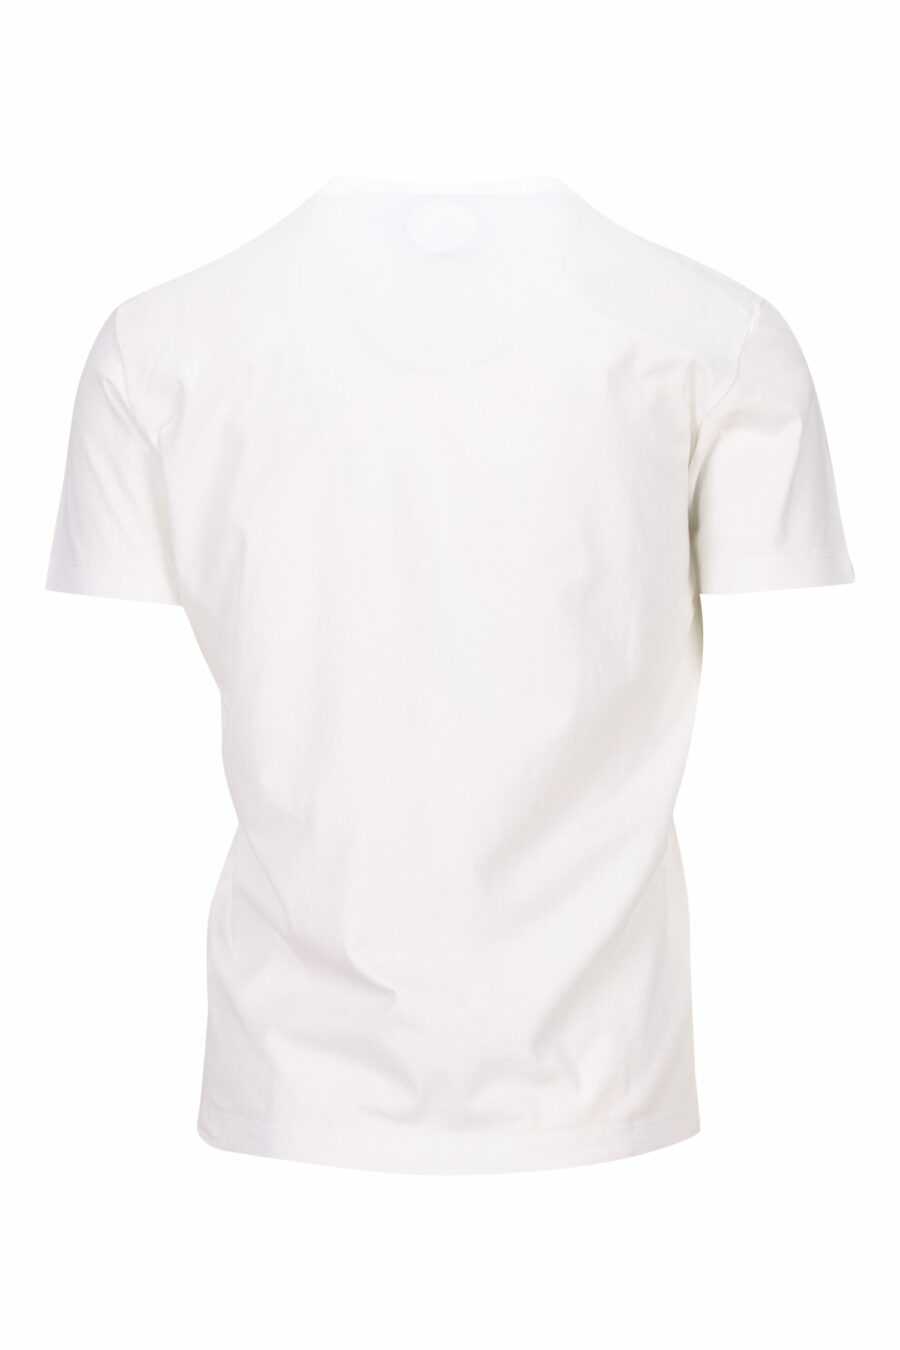 Weißes T-Shirt mit Logo auf kleinem Teller - 8054148404369 1 skaliert